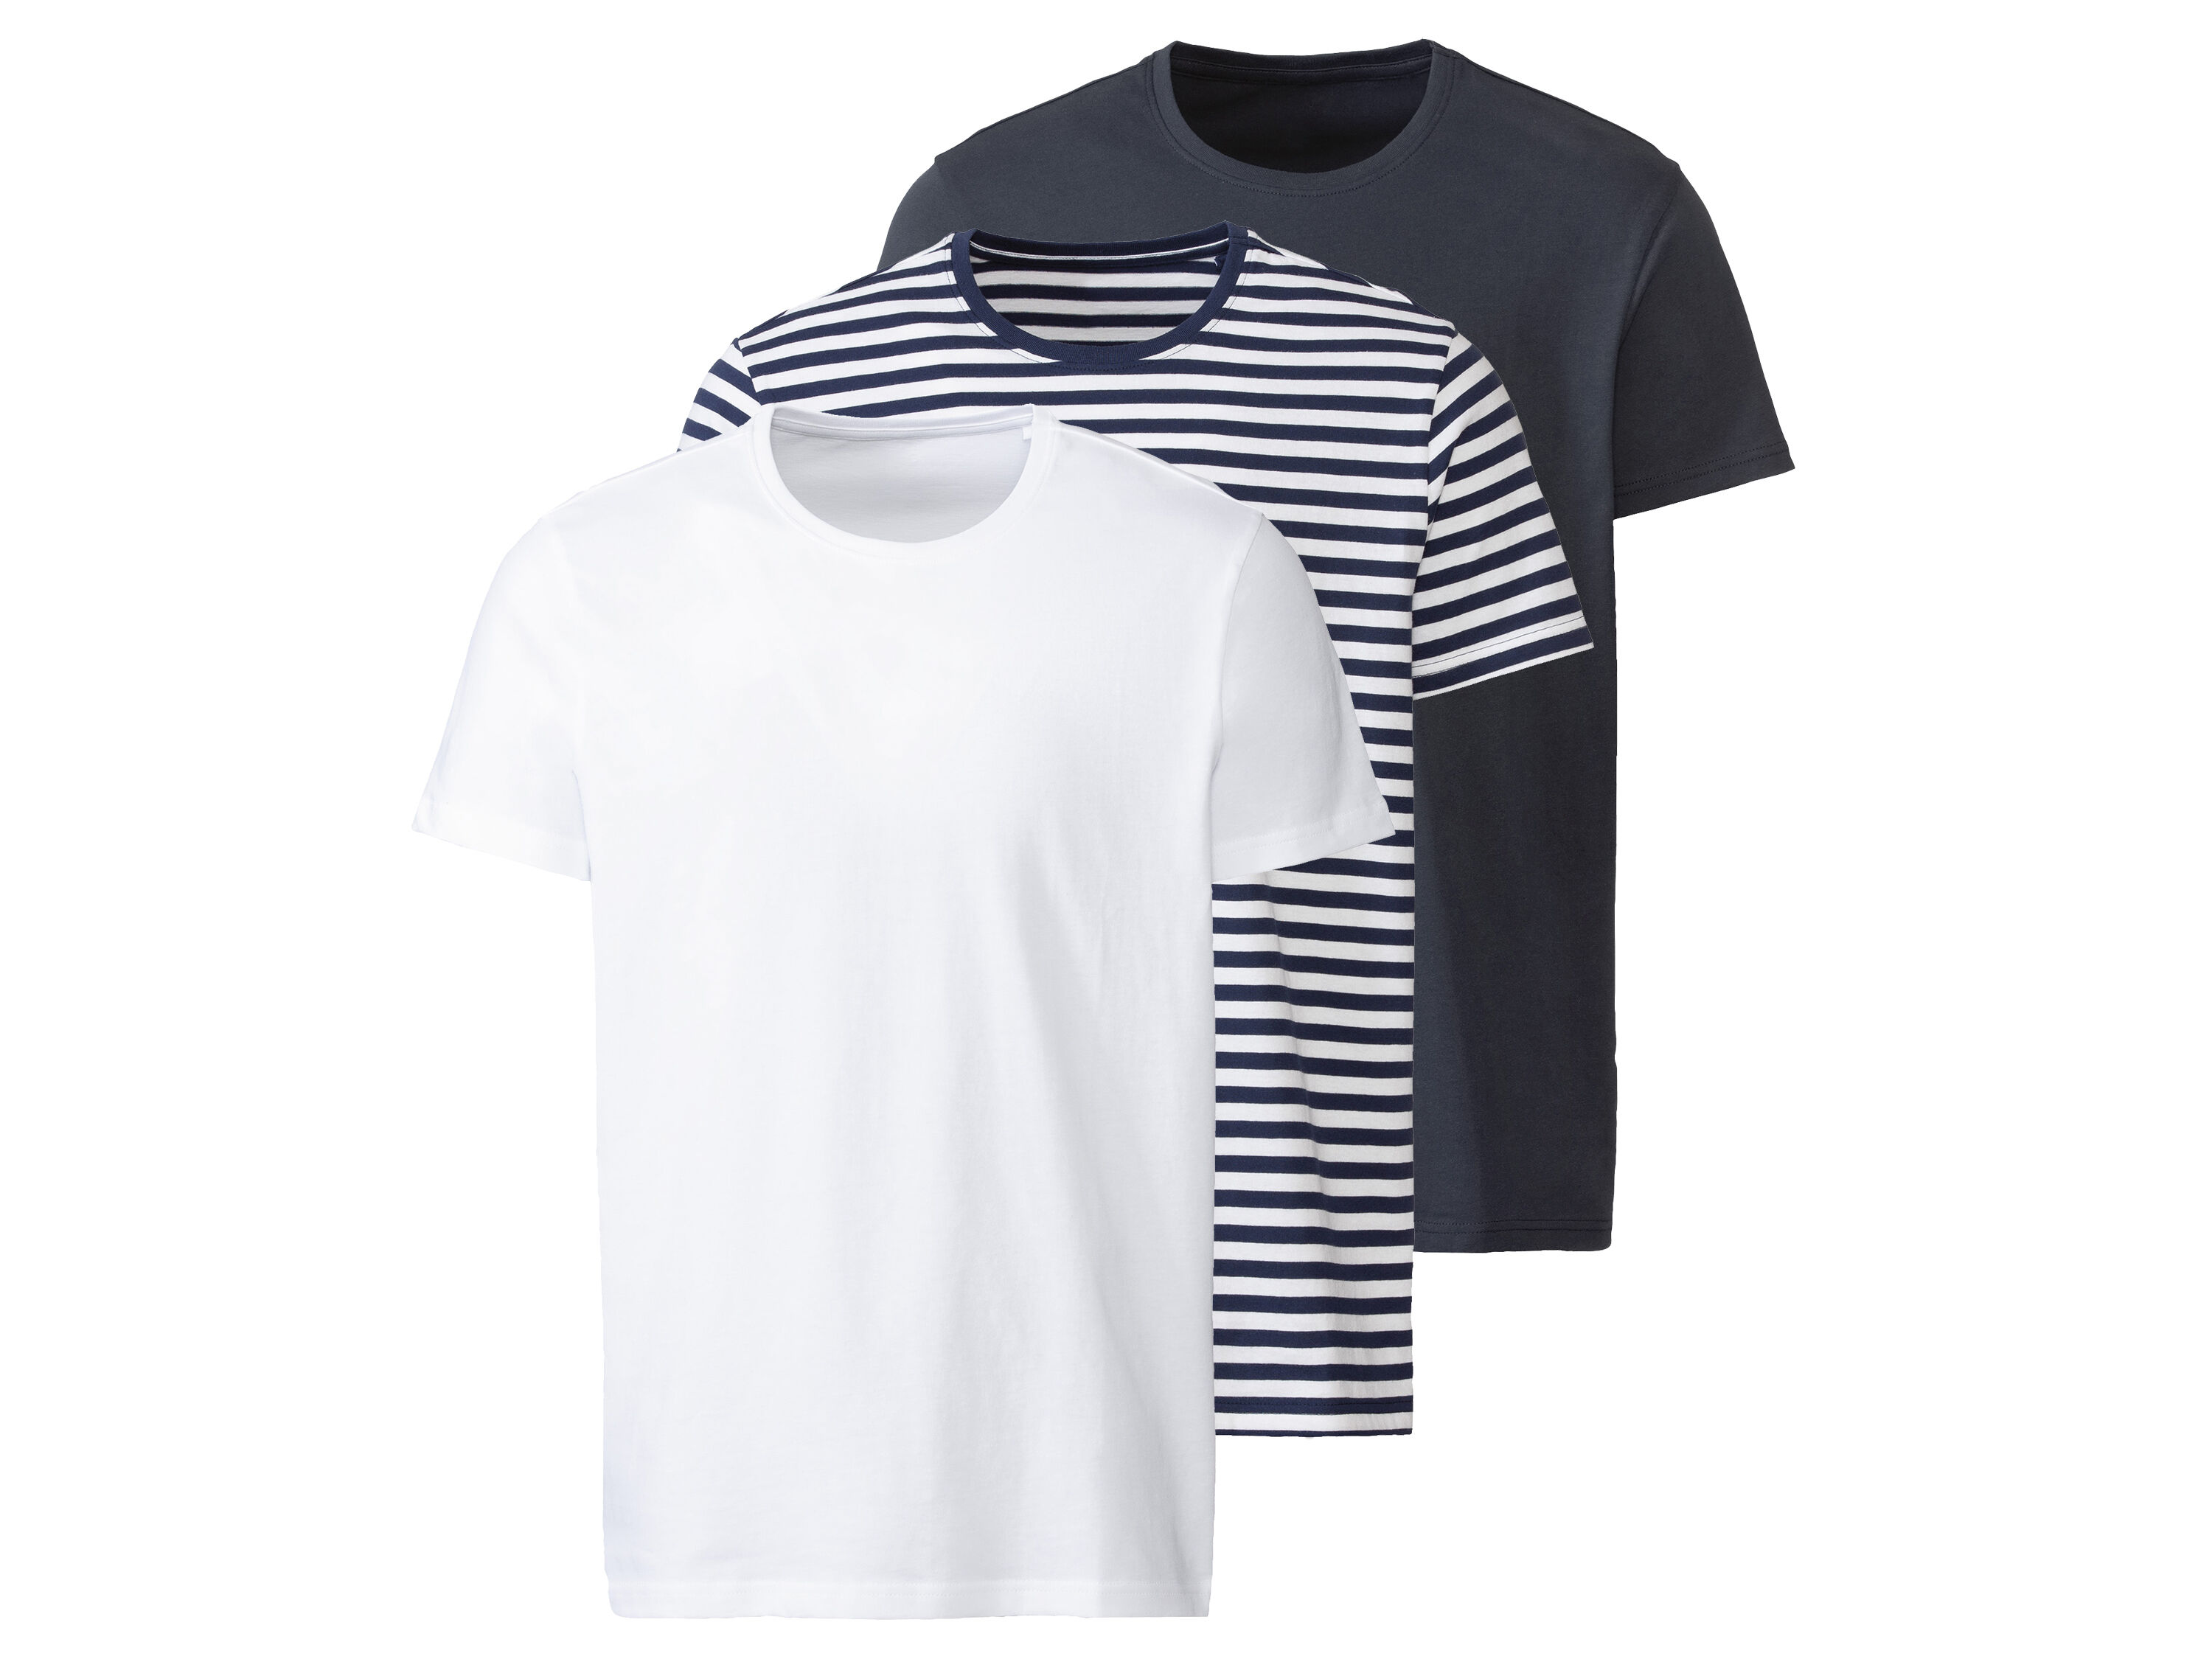 LIVERGY� Lot de 3 t-shirts homme (L, bleu foncé/blanc/rayé)